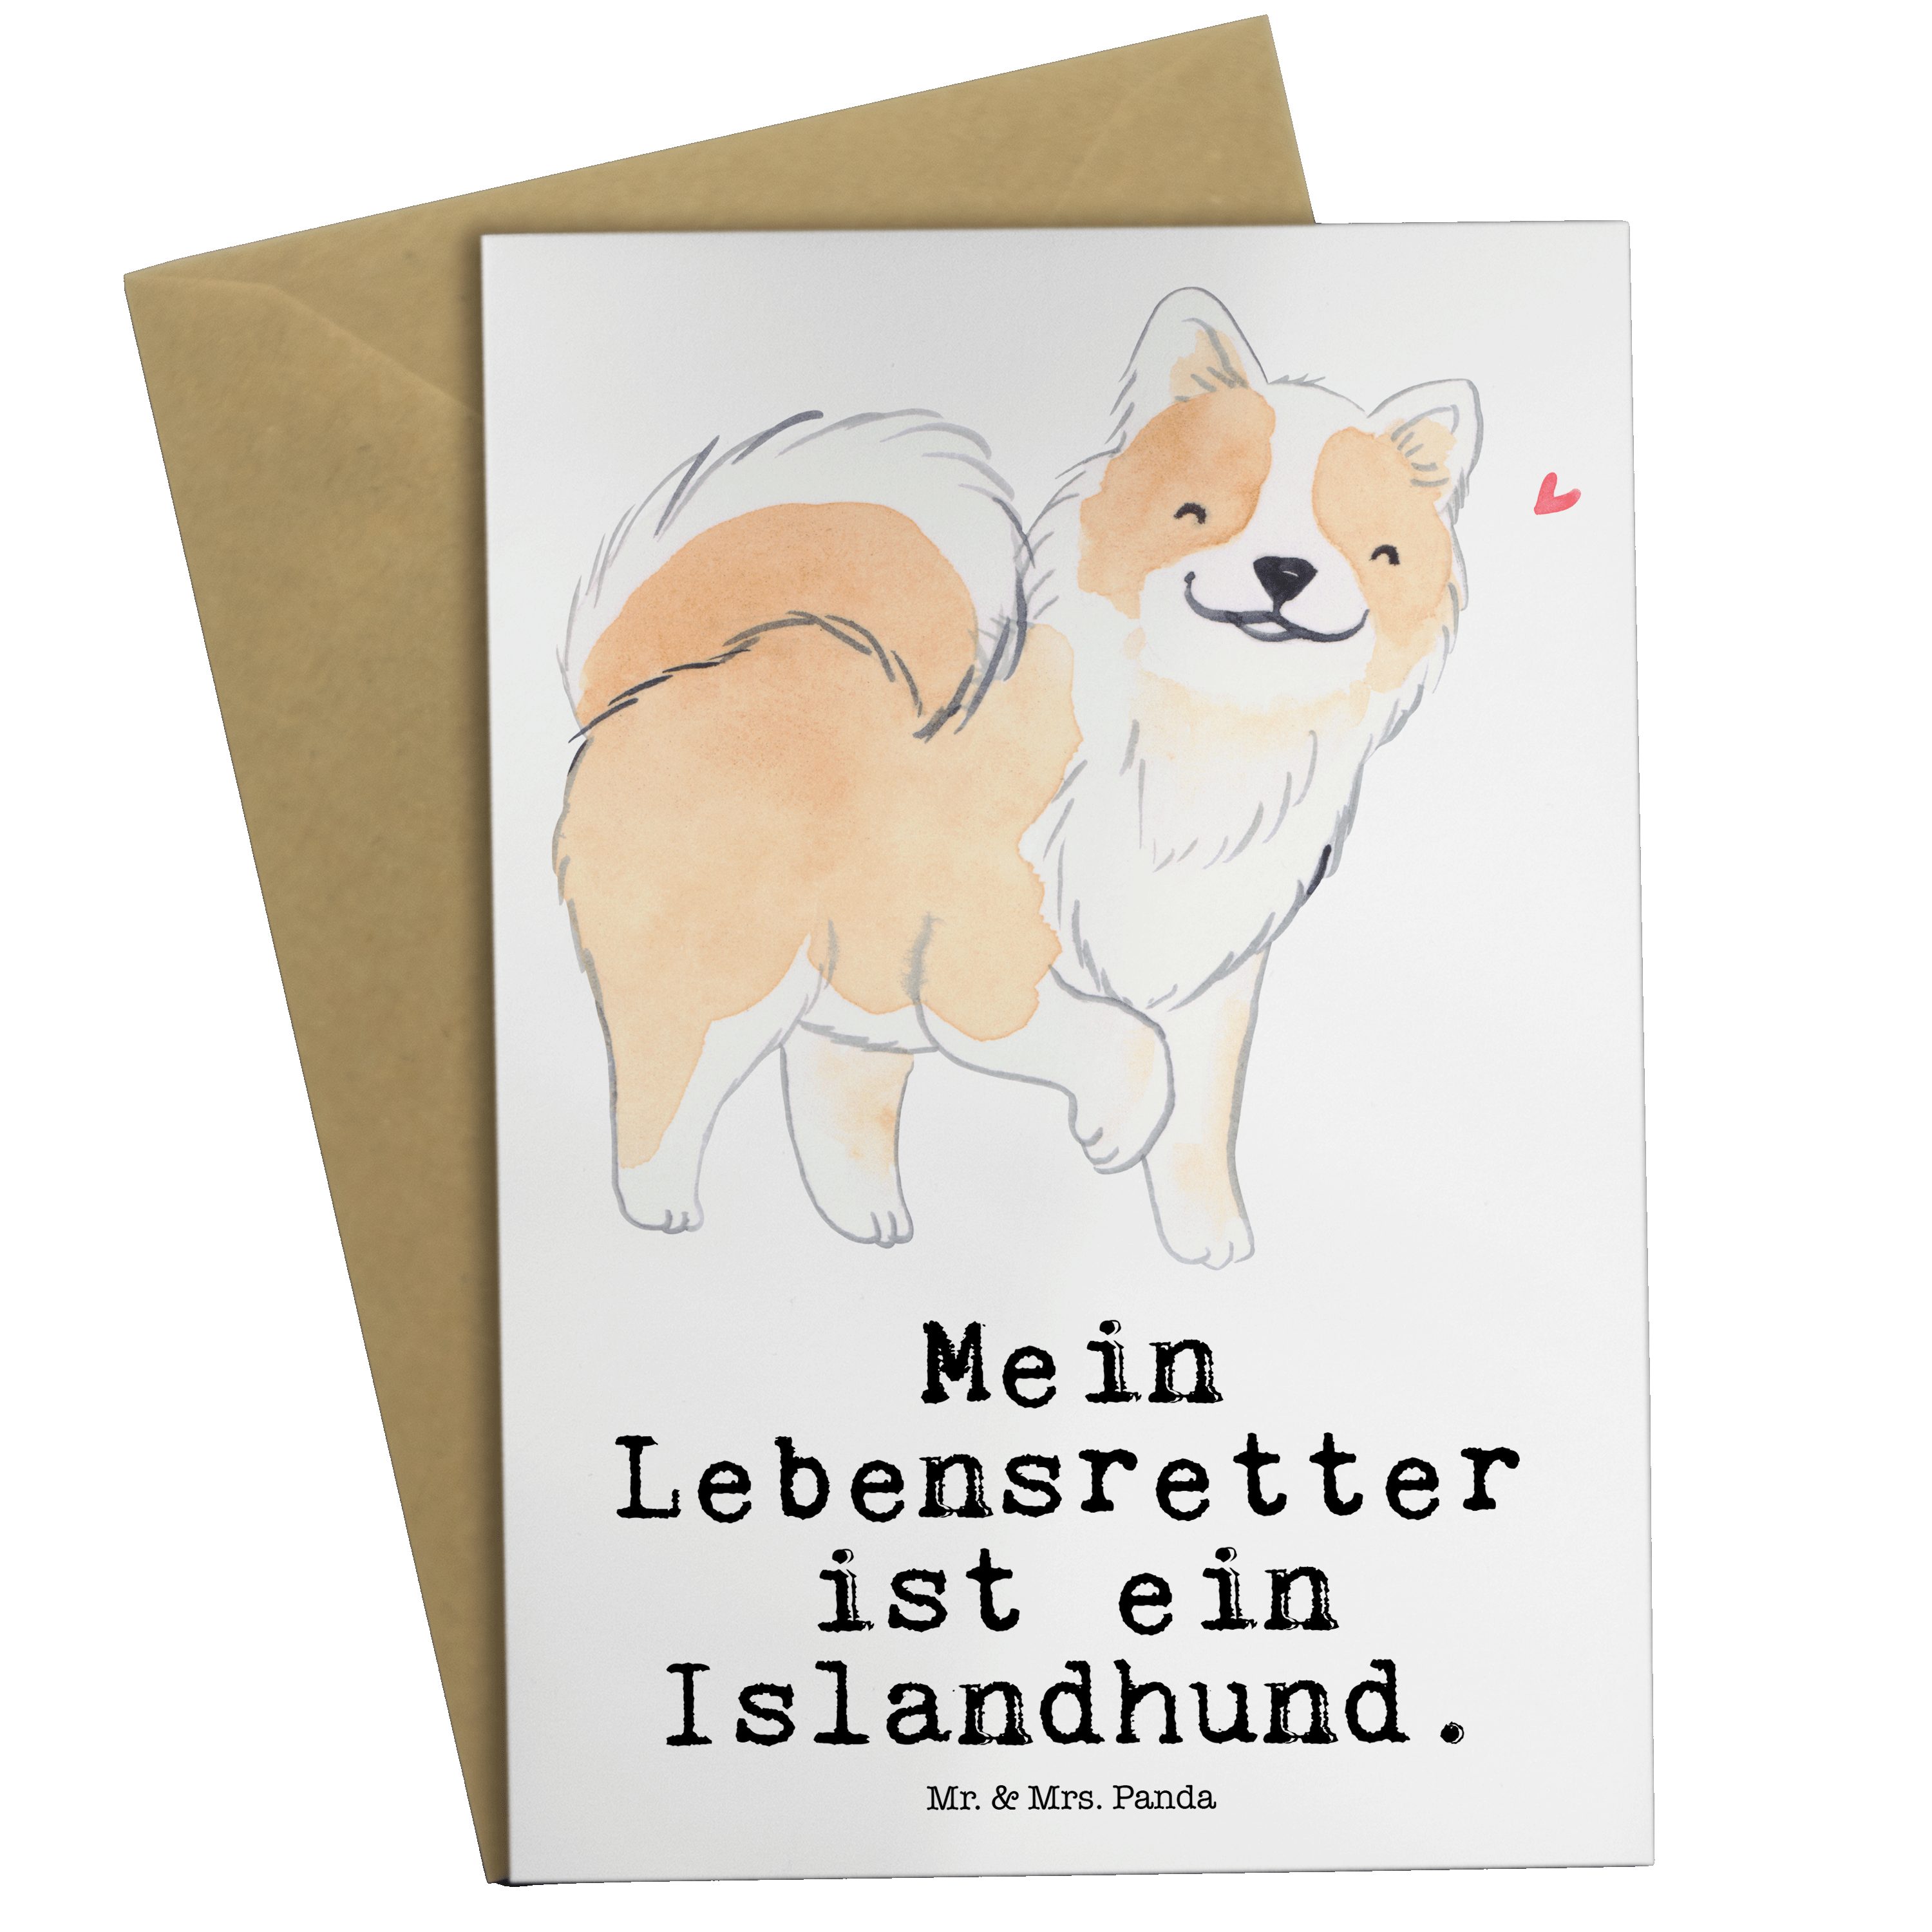 Mr. & Mrs. Panda Grußkarte Islandhund Lebensretter - Weiß - Geschenk, Glückwunschkarte, Geburtst